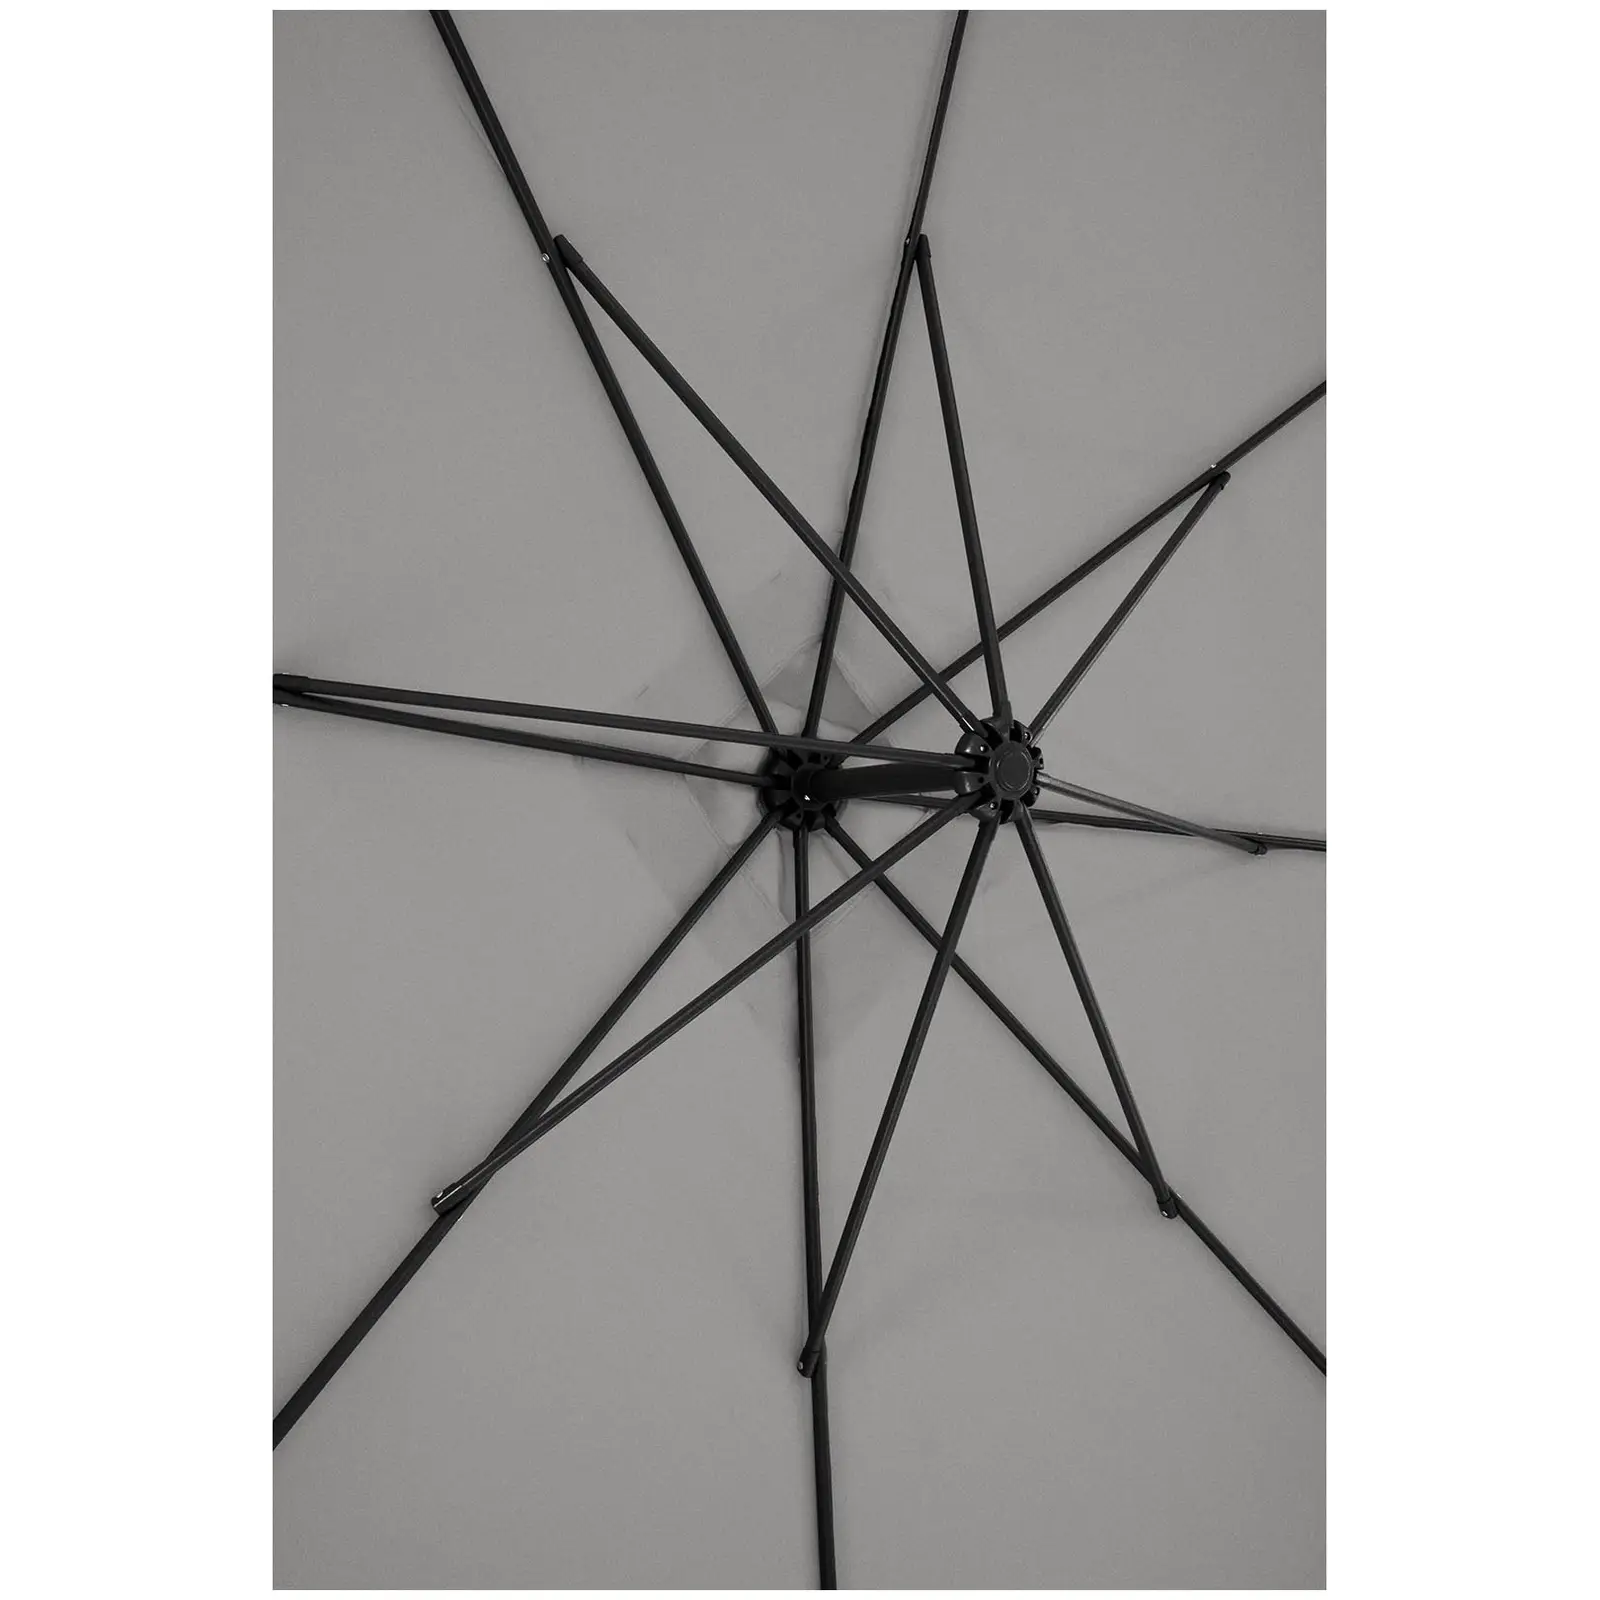 Ampelschirm - Dunkelgrau - viereckig - 250 x 250 cm - neigbar